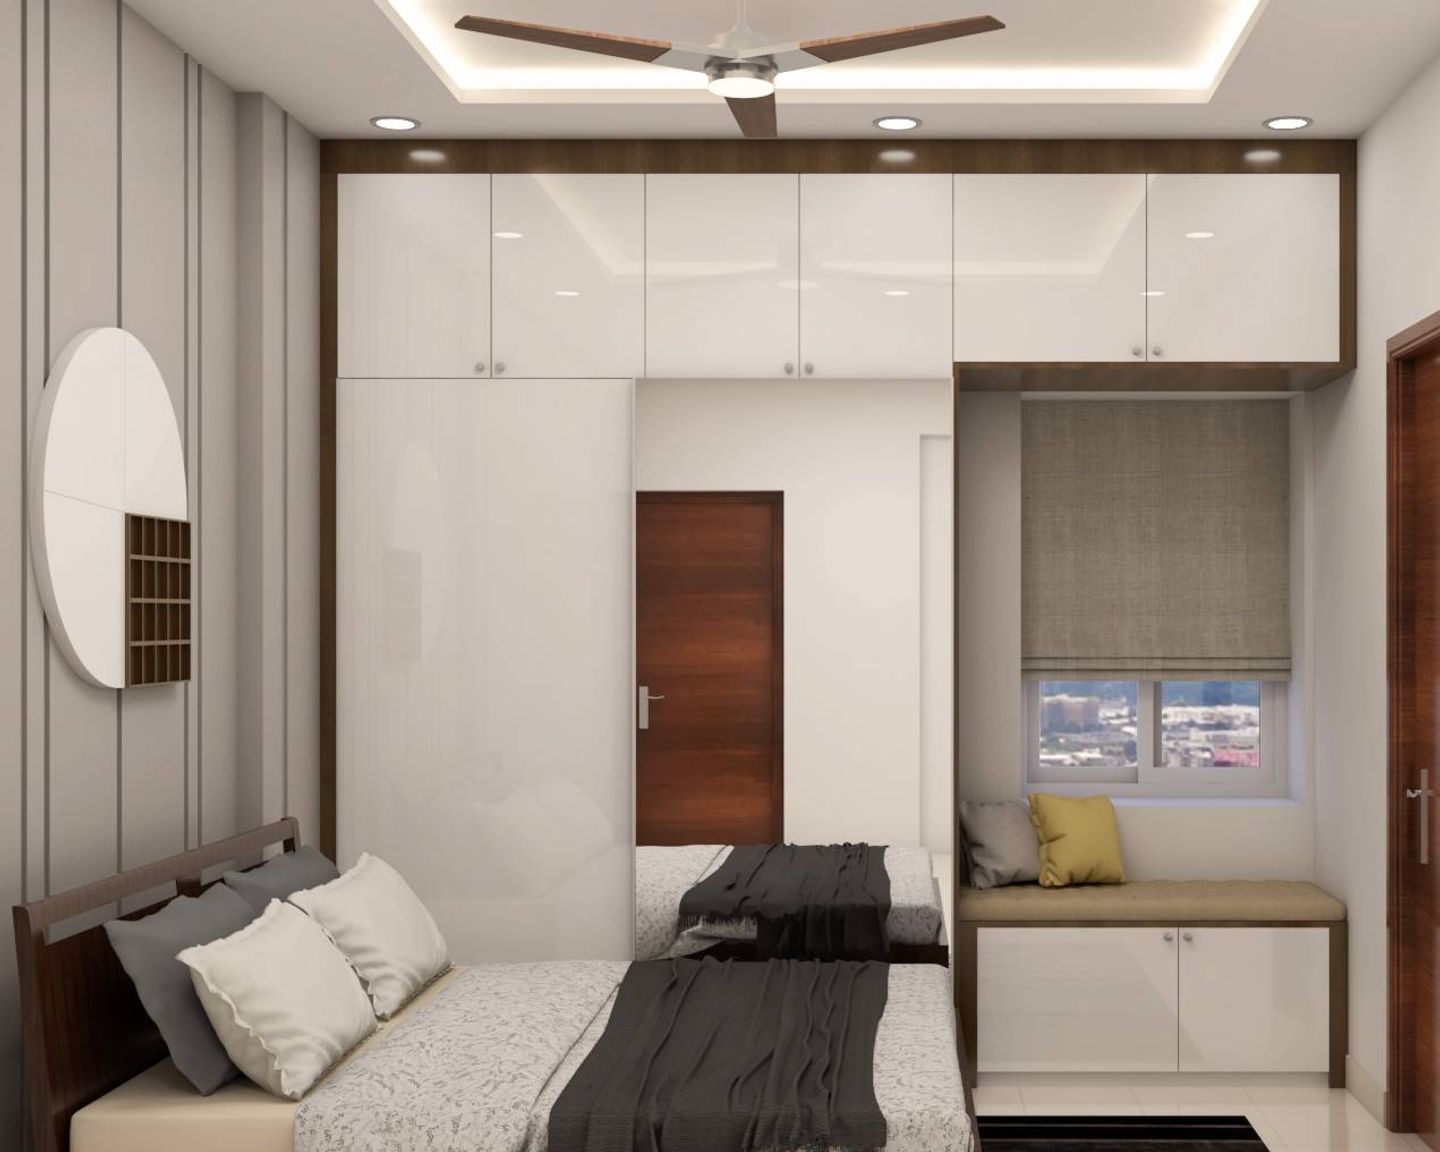 Modernistic Master Bedroom Design With Sliding Wardrobe | Livspace